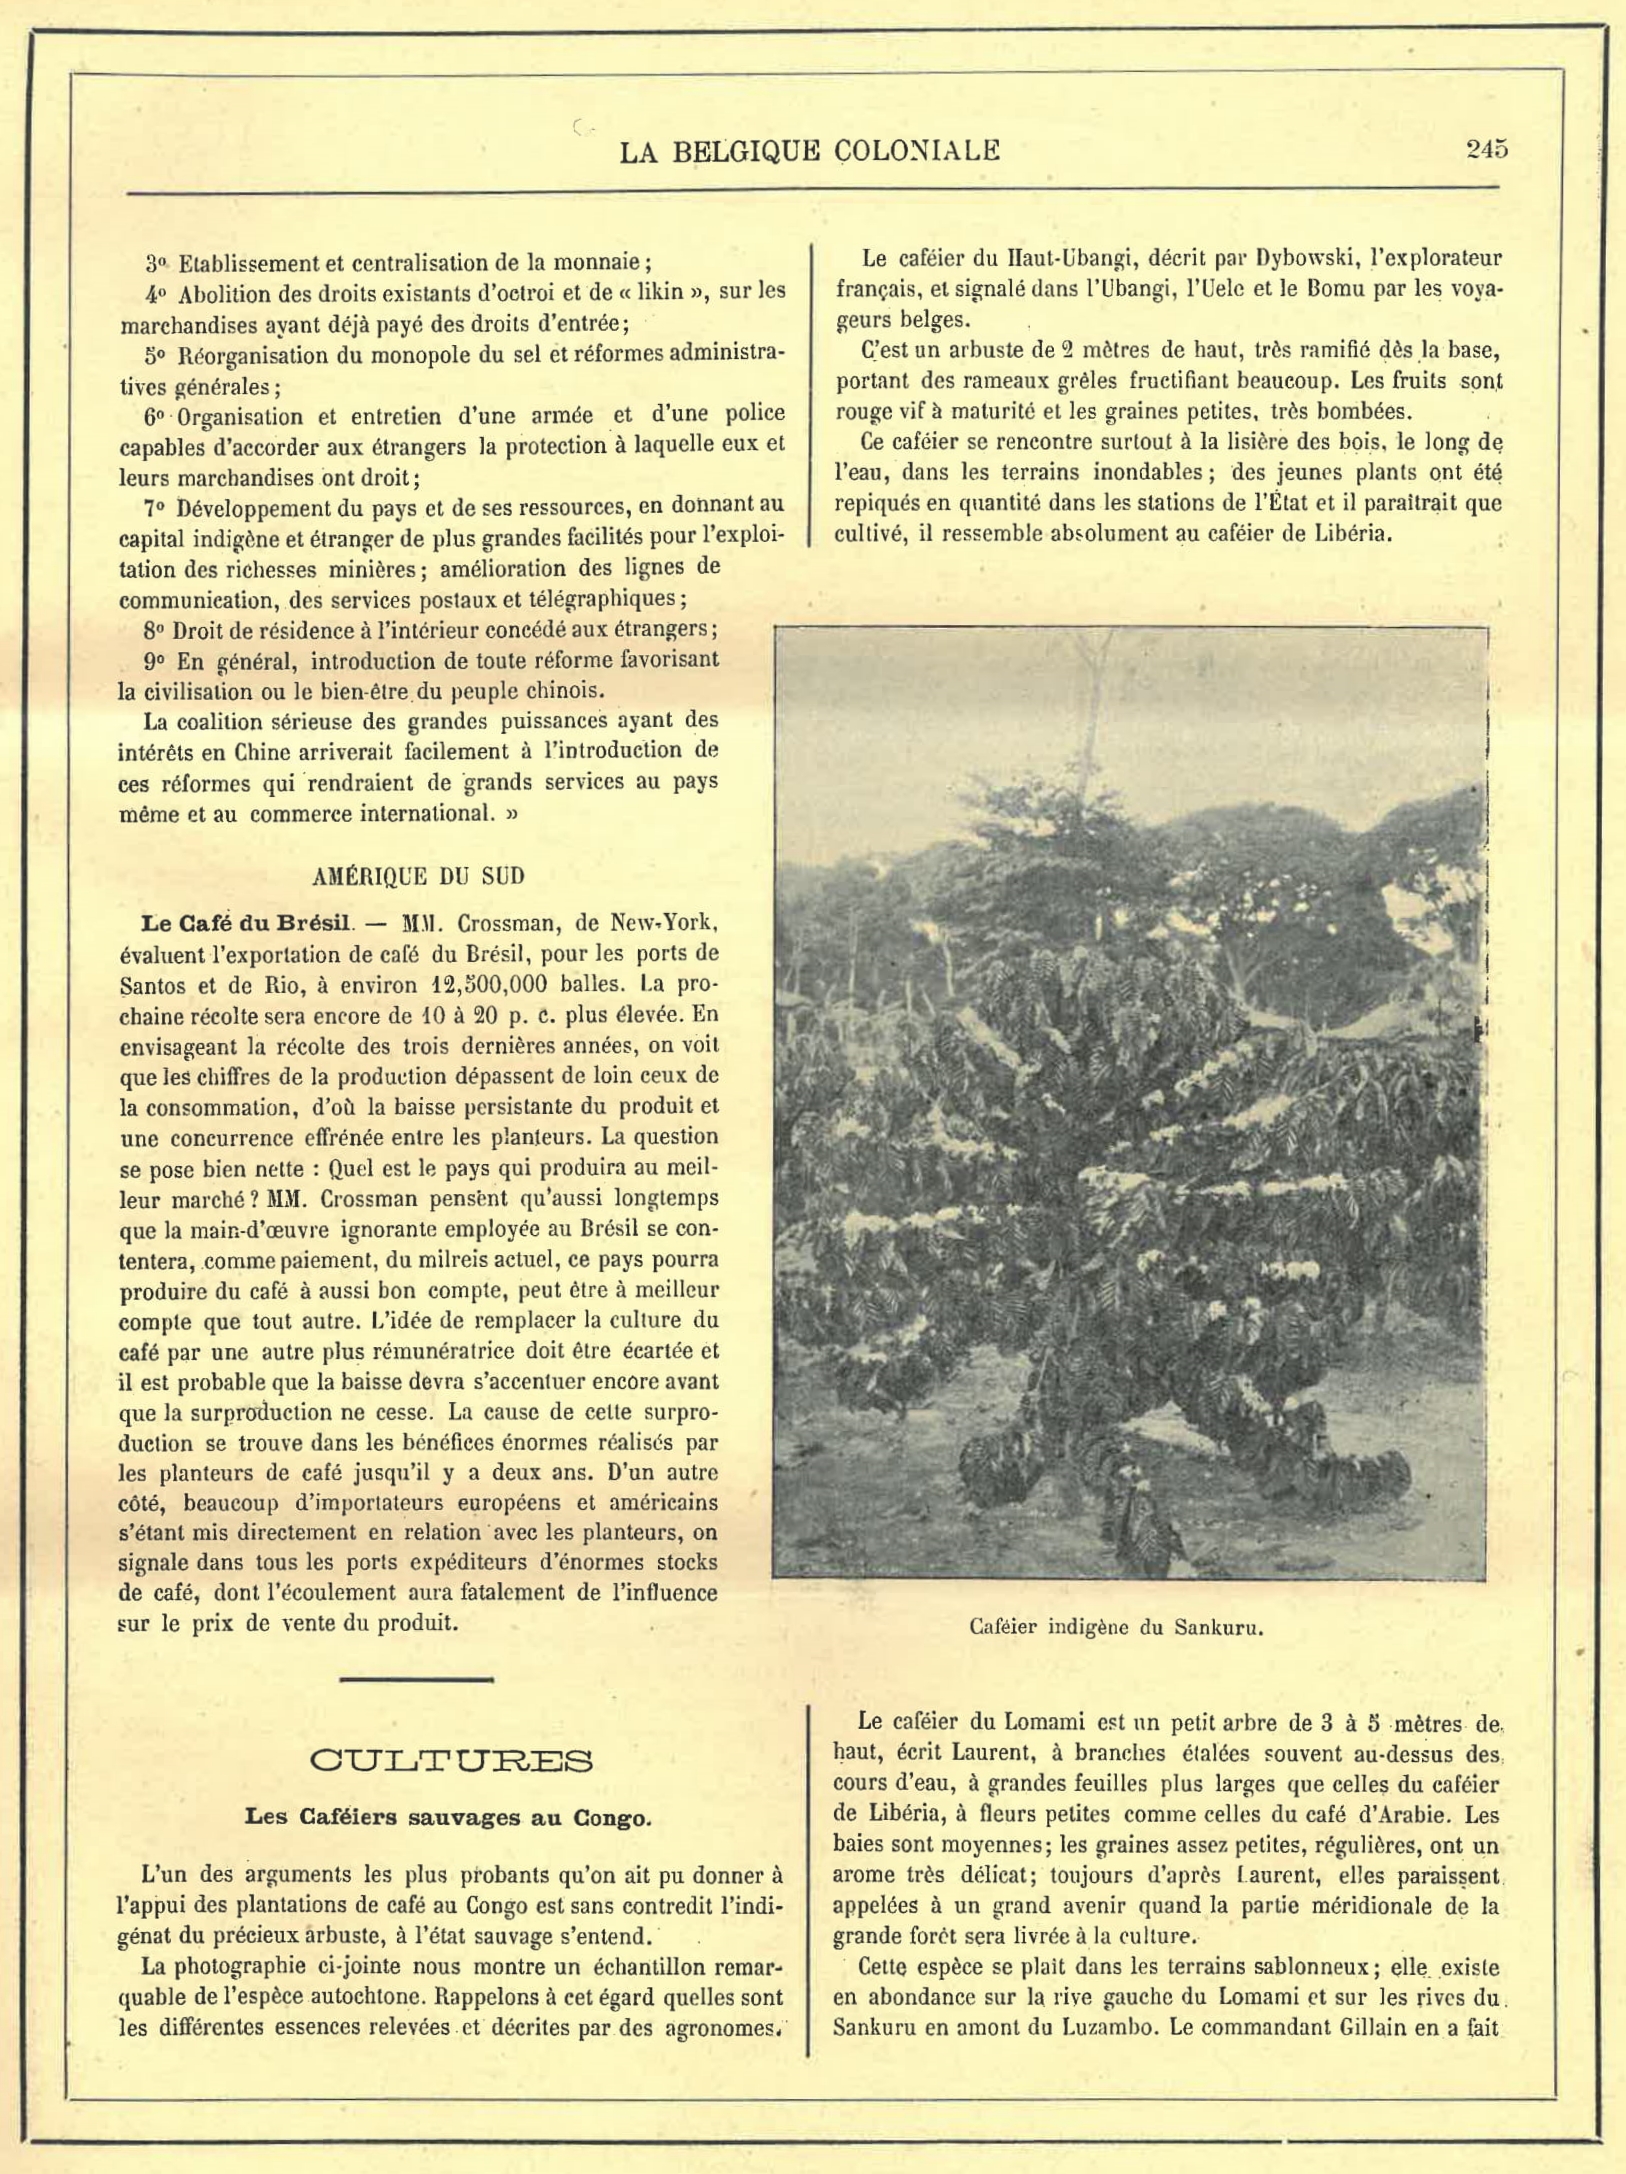 Artikels over Braziliaanse koffie en wilde koffieplanten in Congo in het tijdschrift La Belgique Coloniale, 21 mei 1899, Collectie Plantentuin Meise.